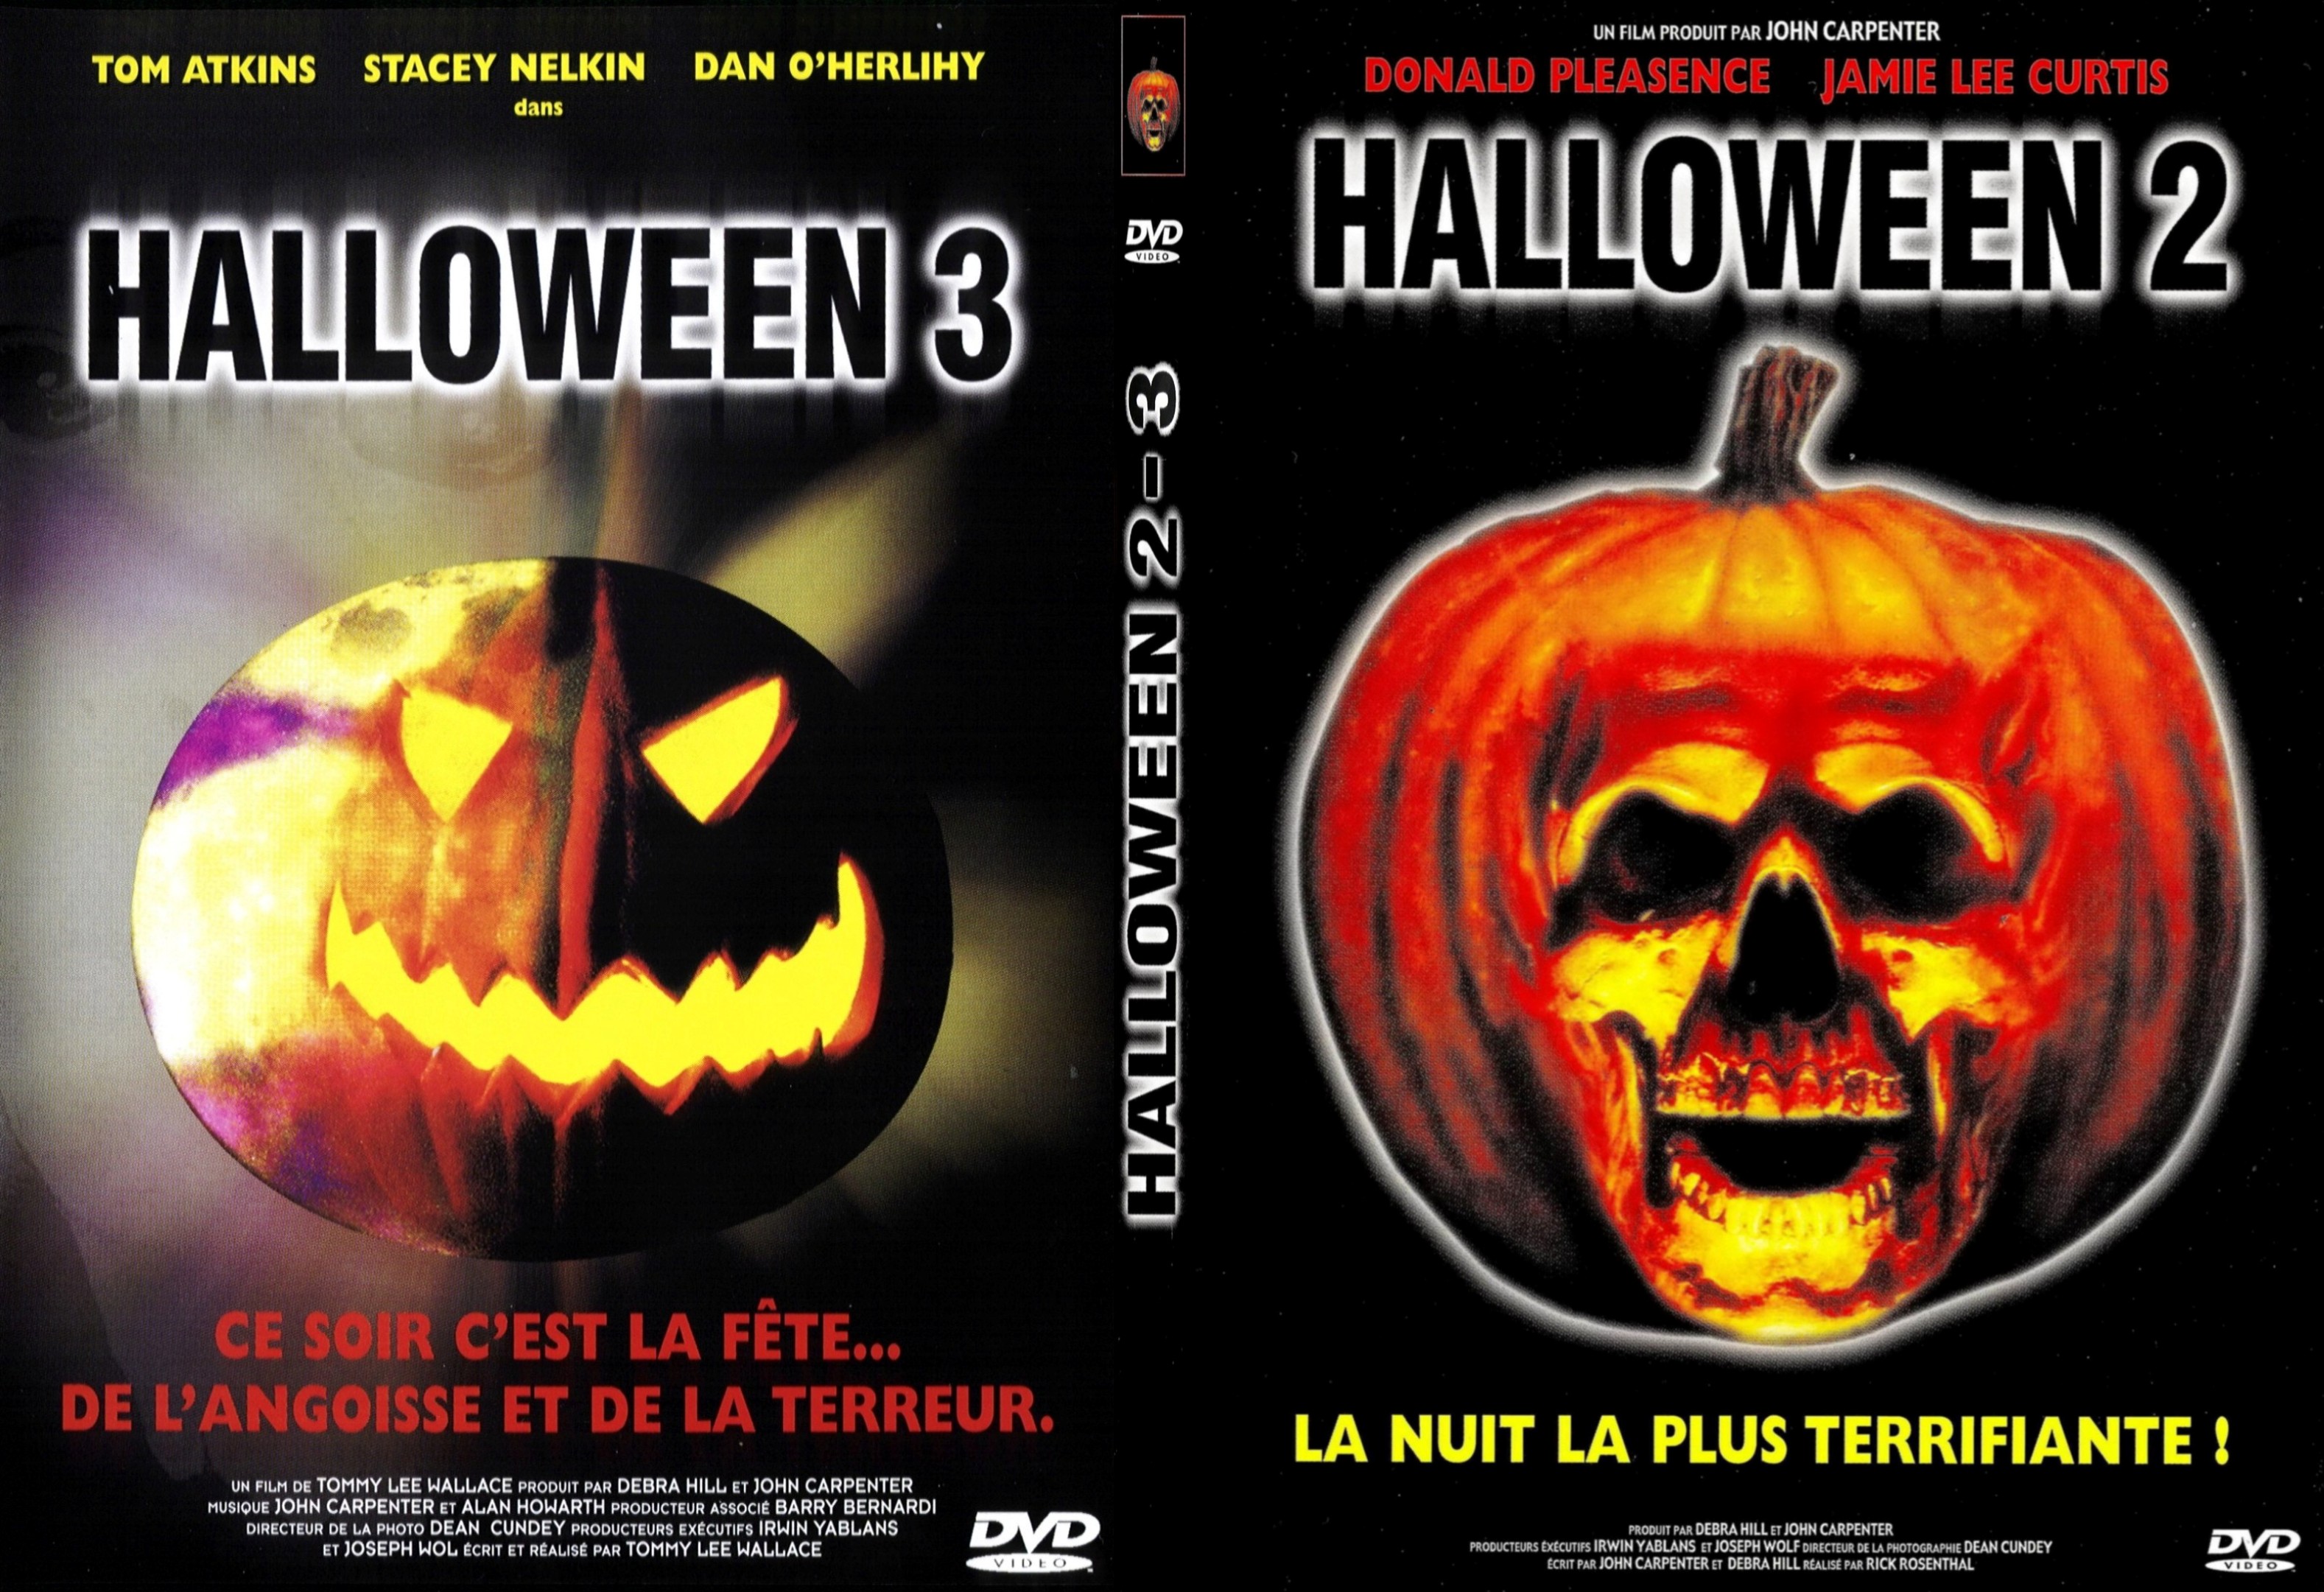 Jaquette DVD Halloween 2 et 3 custom - SLIM